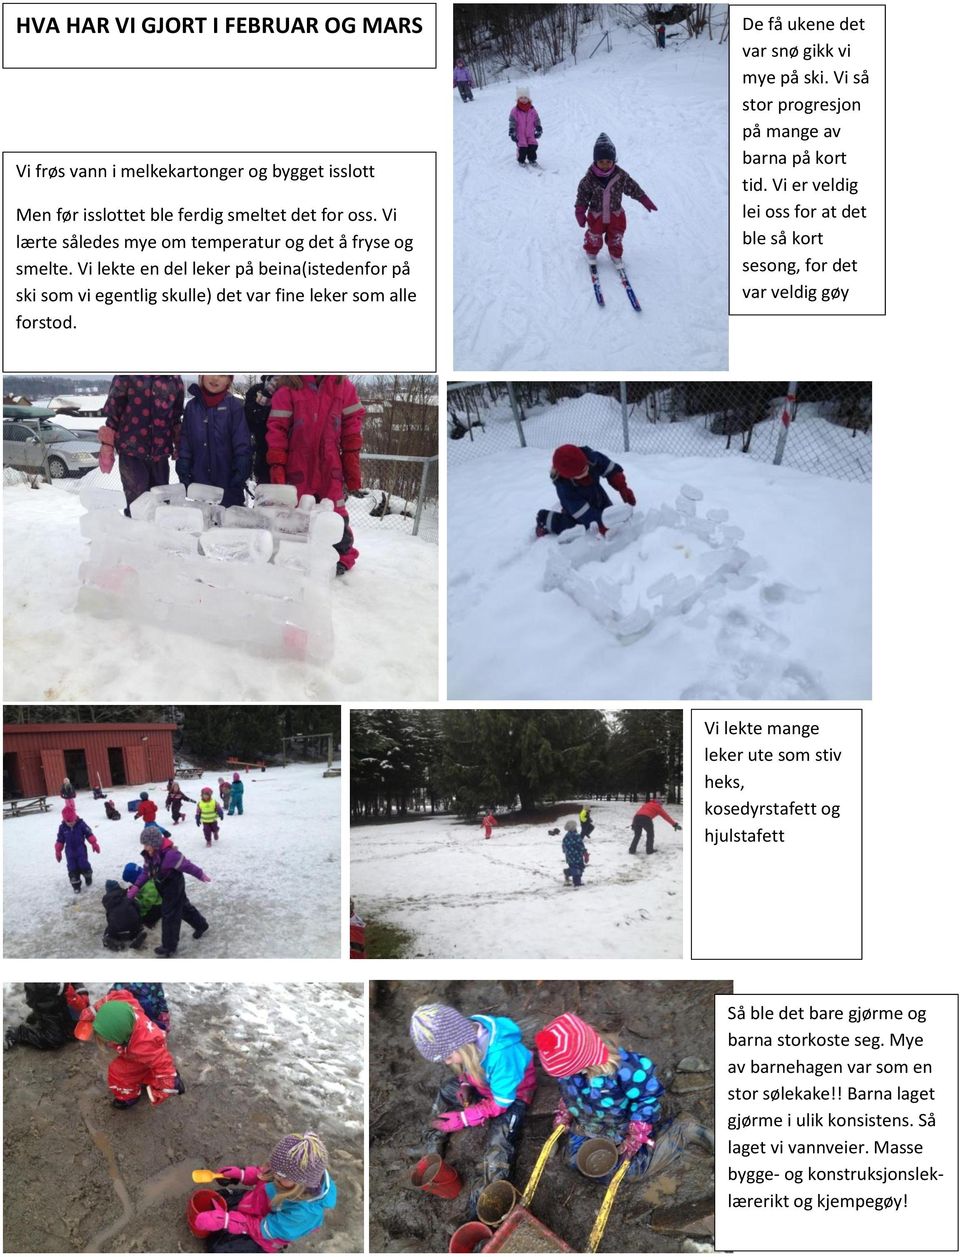 De få ukene det var snø gikk vi mye på ski. Vi så stor progresjon på mange av barna på kort tid.